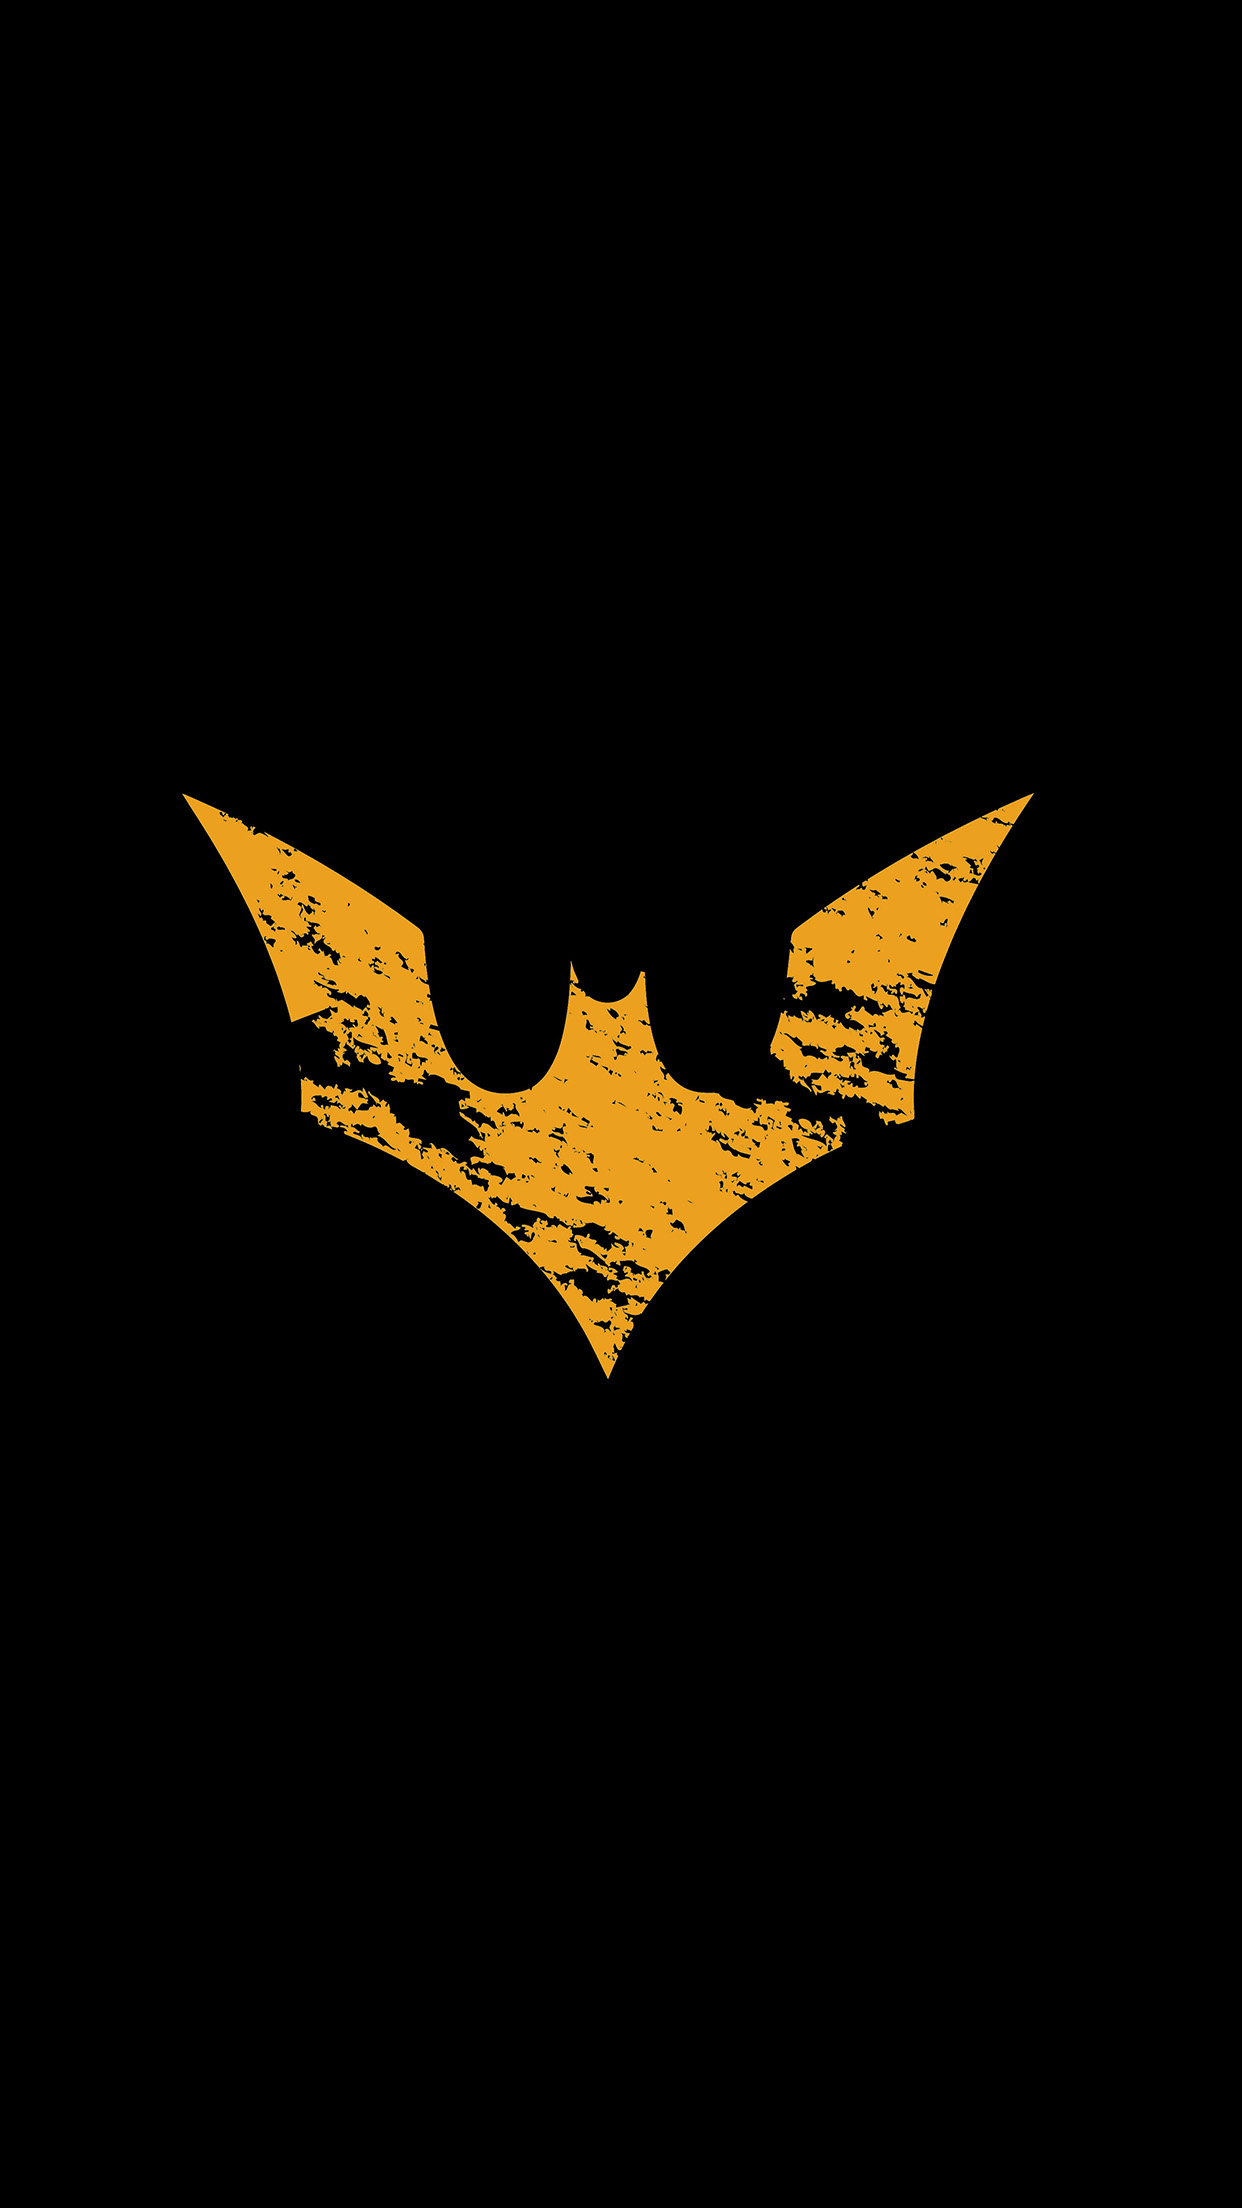 whatsapp fondos de pantalla hd,hombre murciélago,murciélago,emblema,liga de la justicia,símbolo